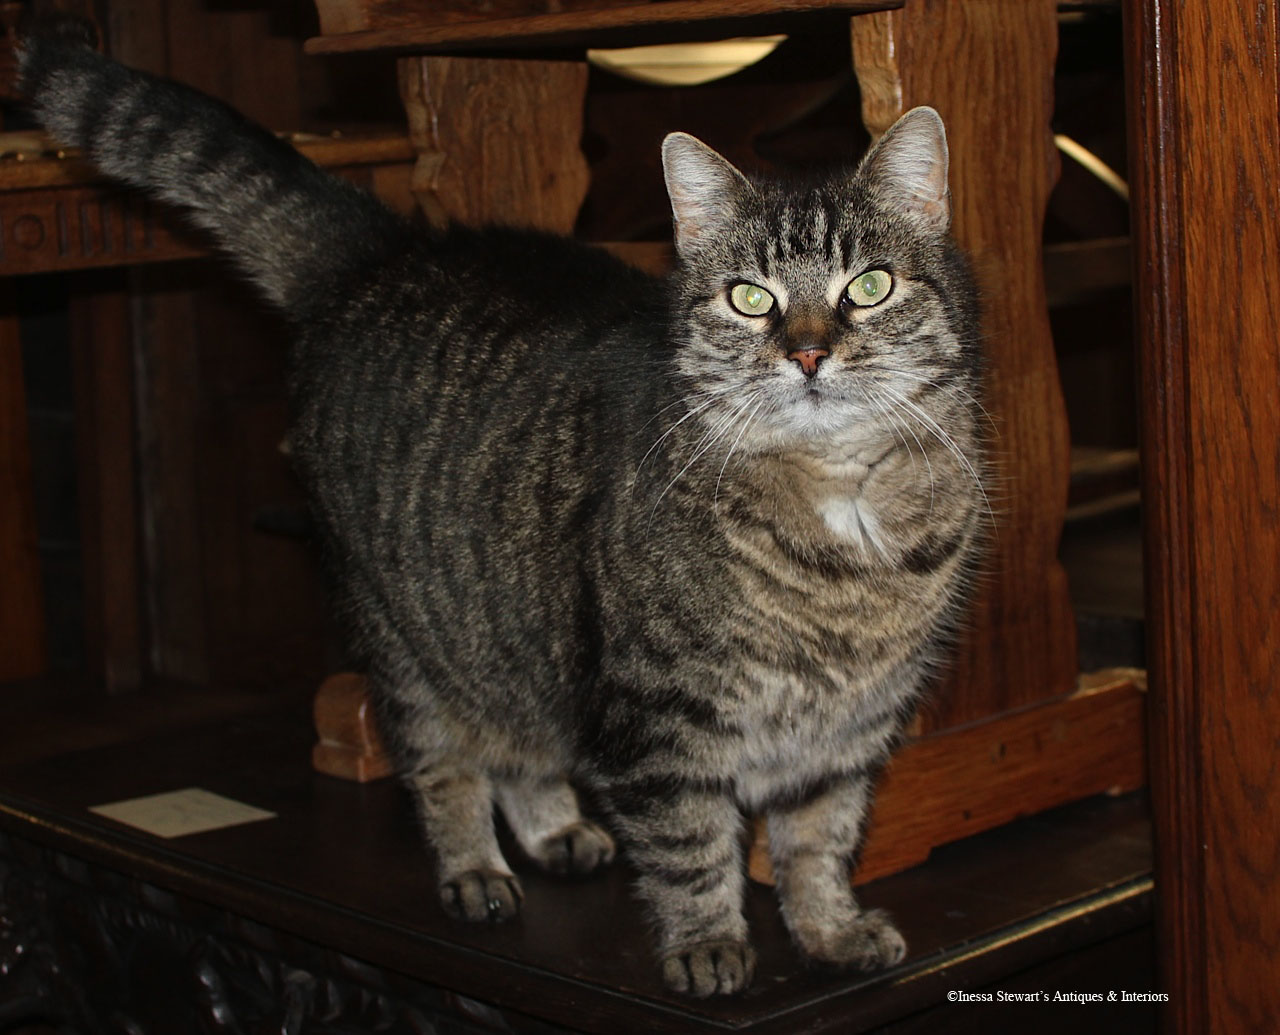 Inessa Stewart's Antiques & Interiors: Cat